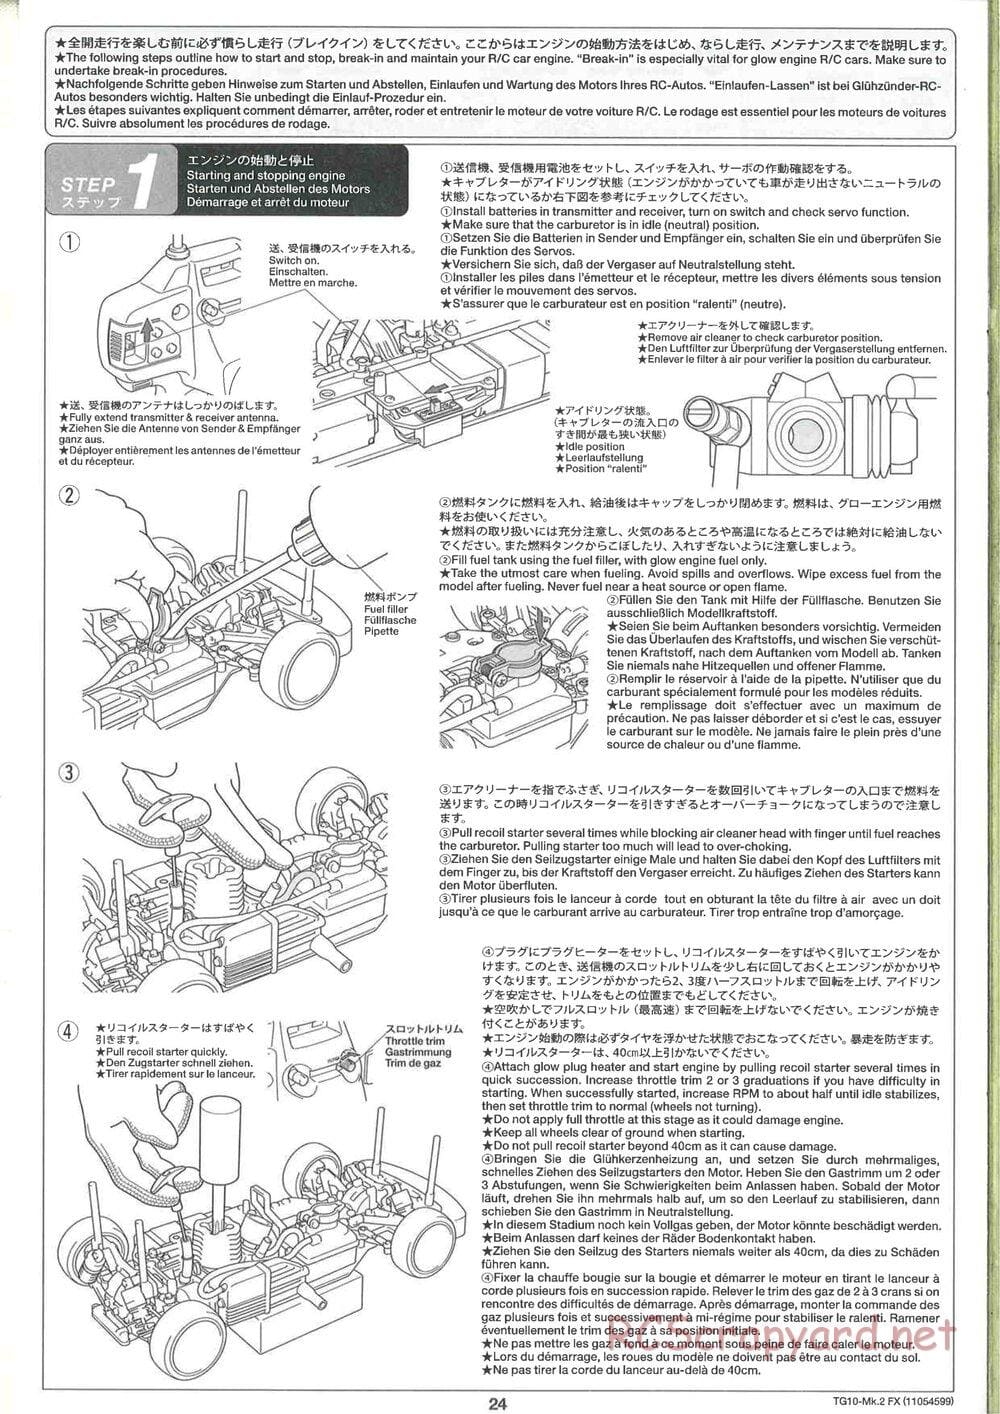 Tamiya - TG10 Mk.2 FX Chassis - Manual - Page 24